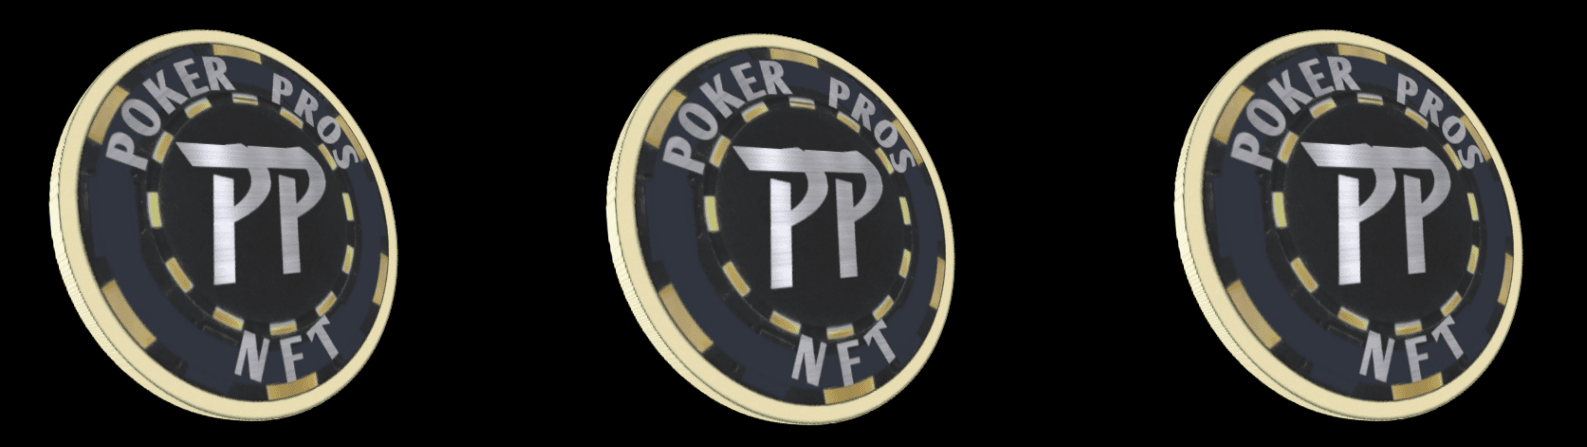 Poker_Pros_NFT banner